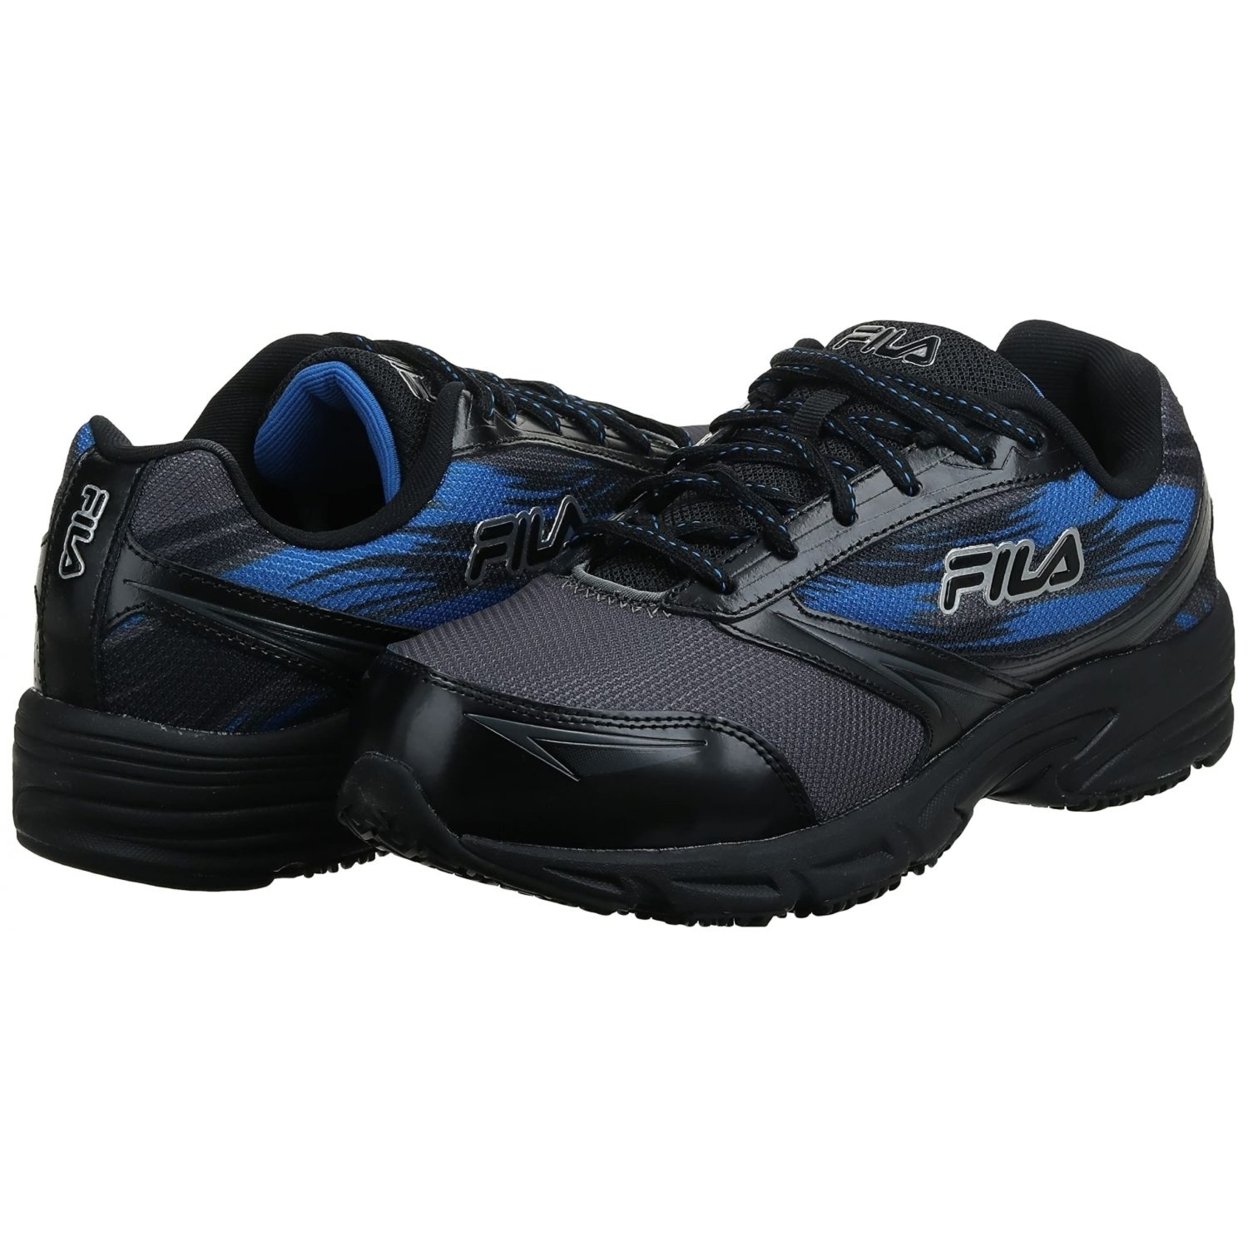 Fila Menâs Memory Meiera 2 Slip Resistant And Composite Toe Work Shoe CSRK/BLK/PRBL - Castlerock/Black/Prince Blue, 11.5